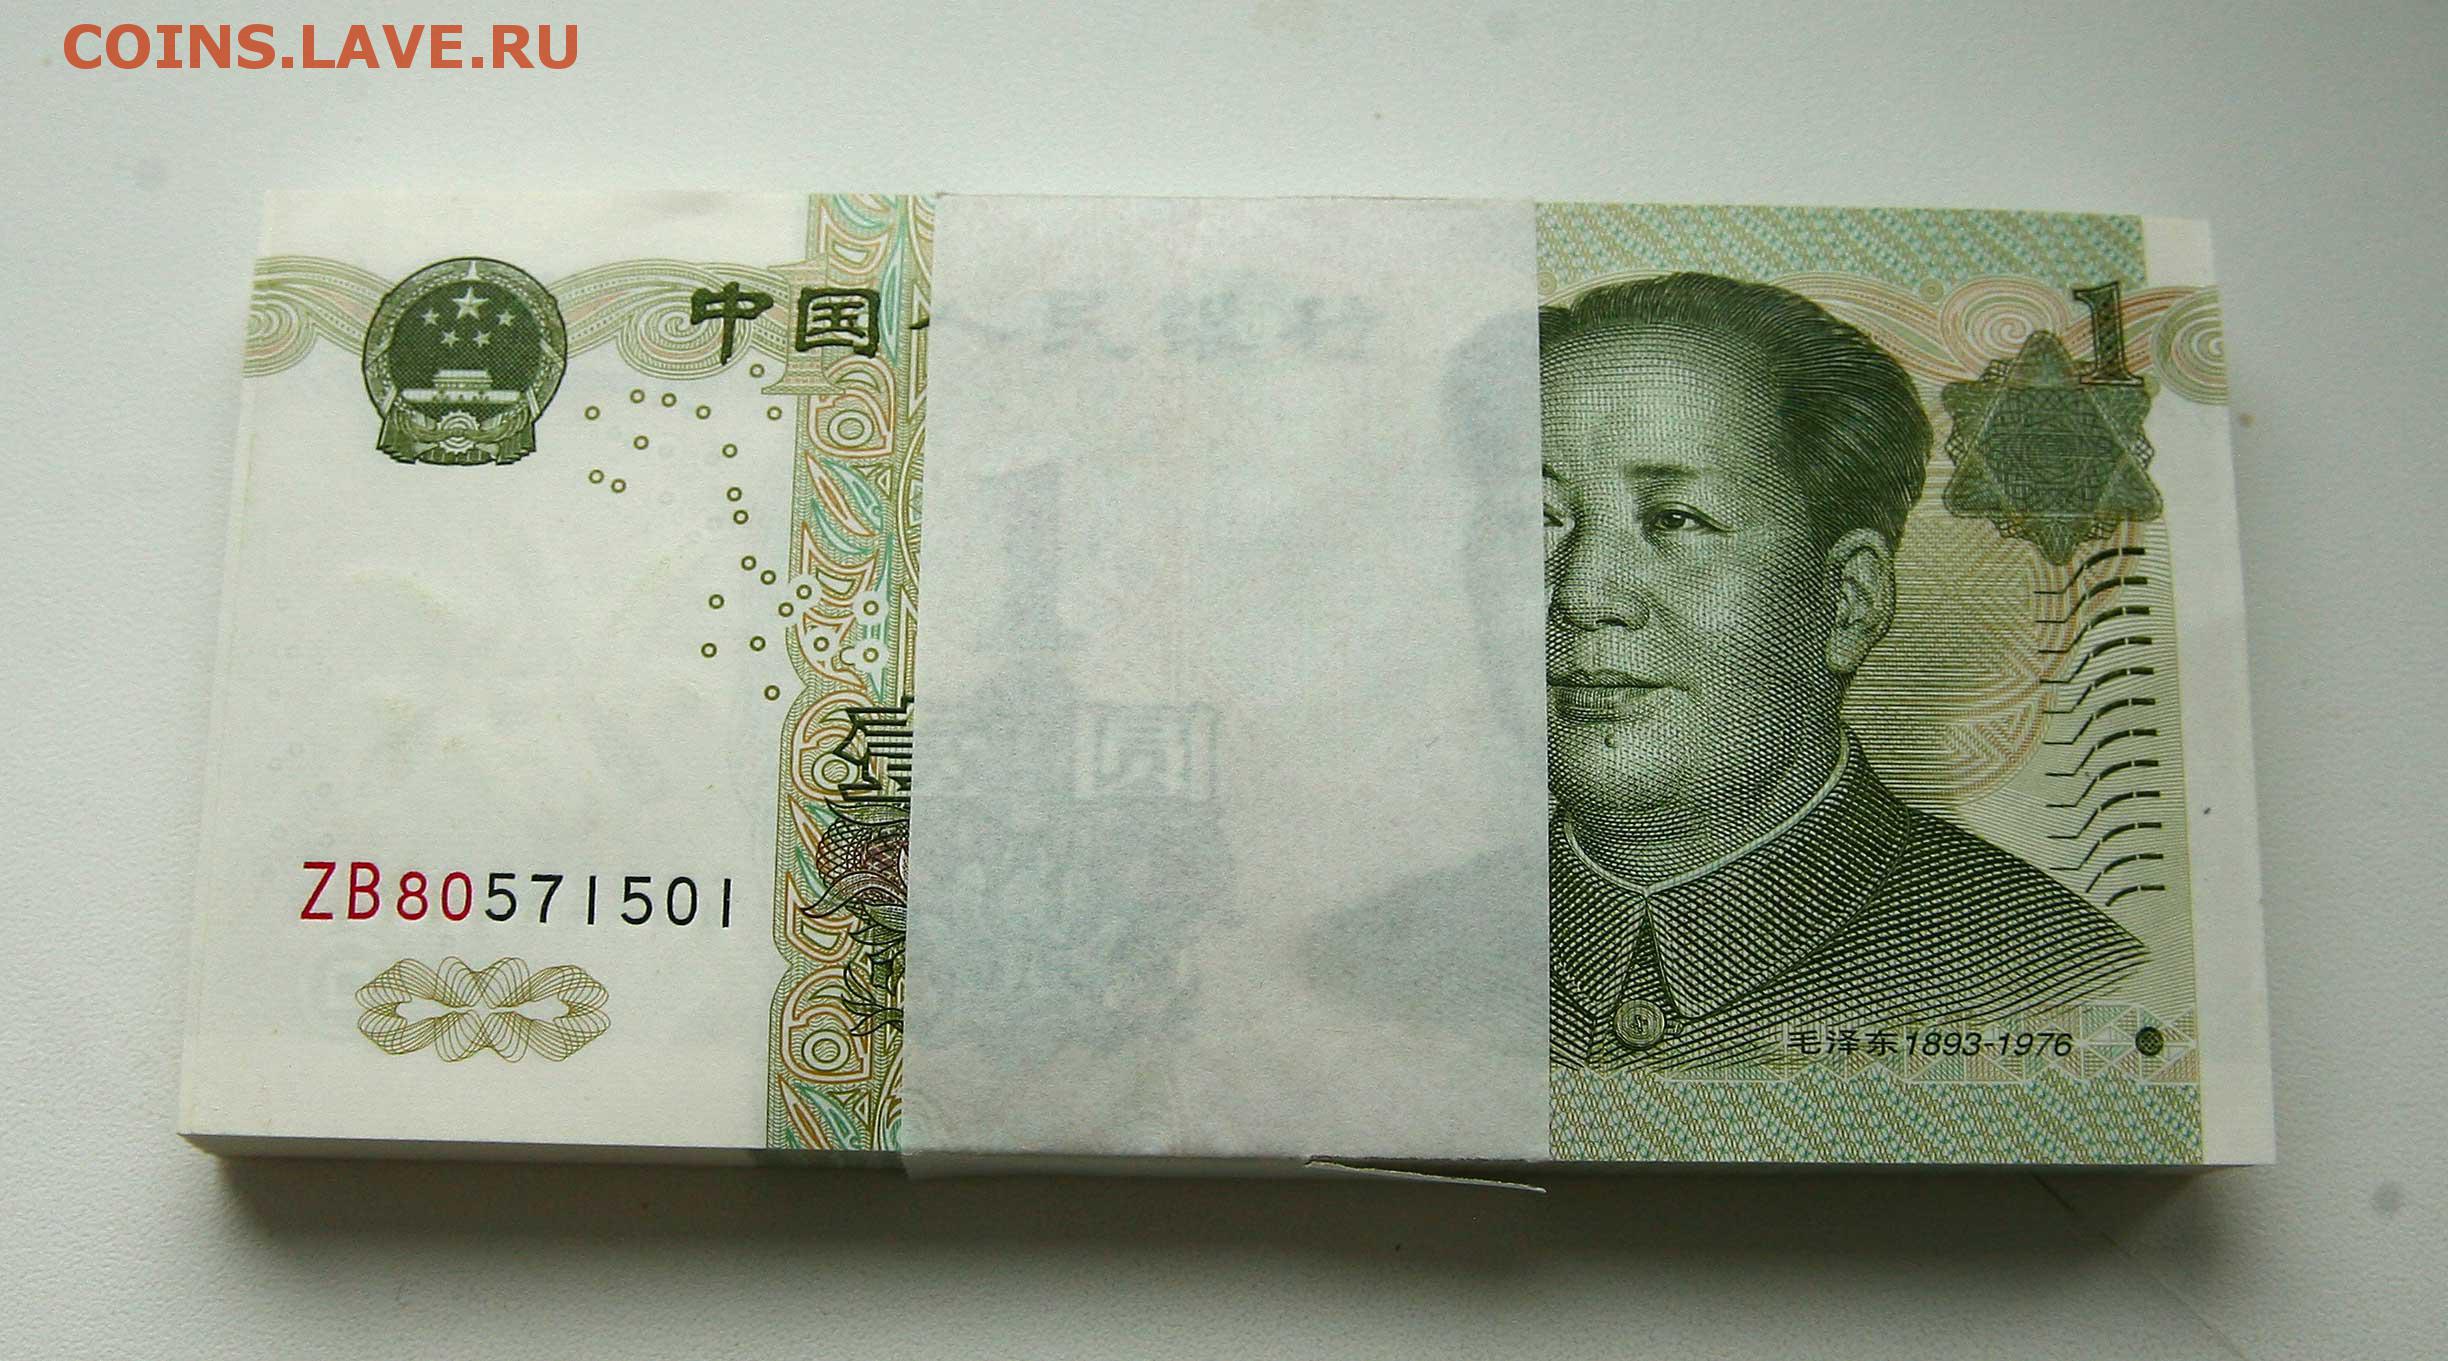 1000000 рублей в юанях. Юань пачки. Китайский юань пачки. Китай 100 юаней. 100 Юань пачка.